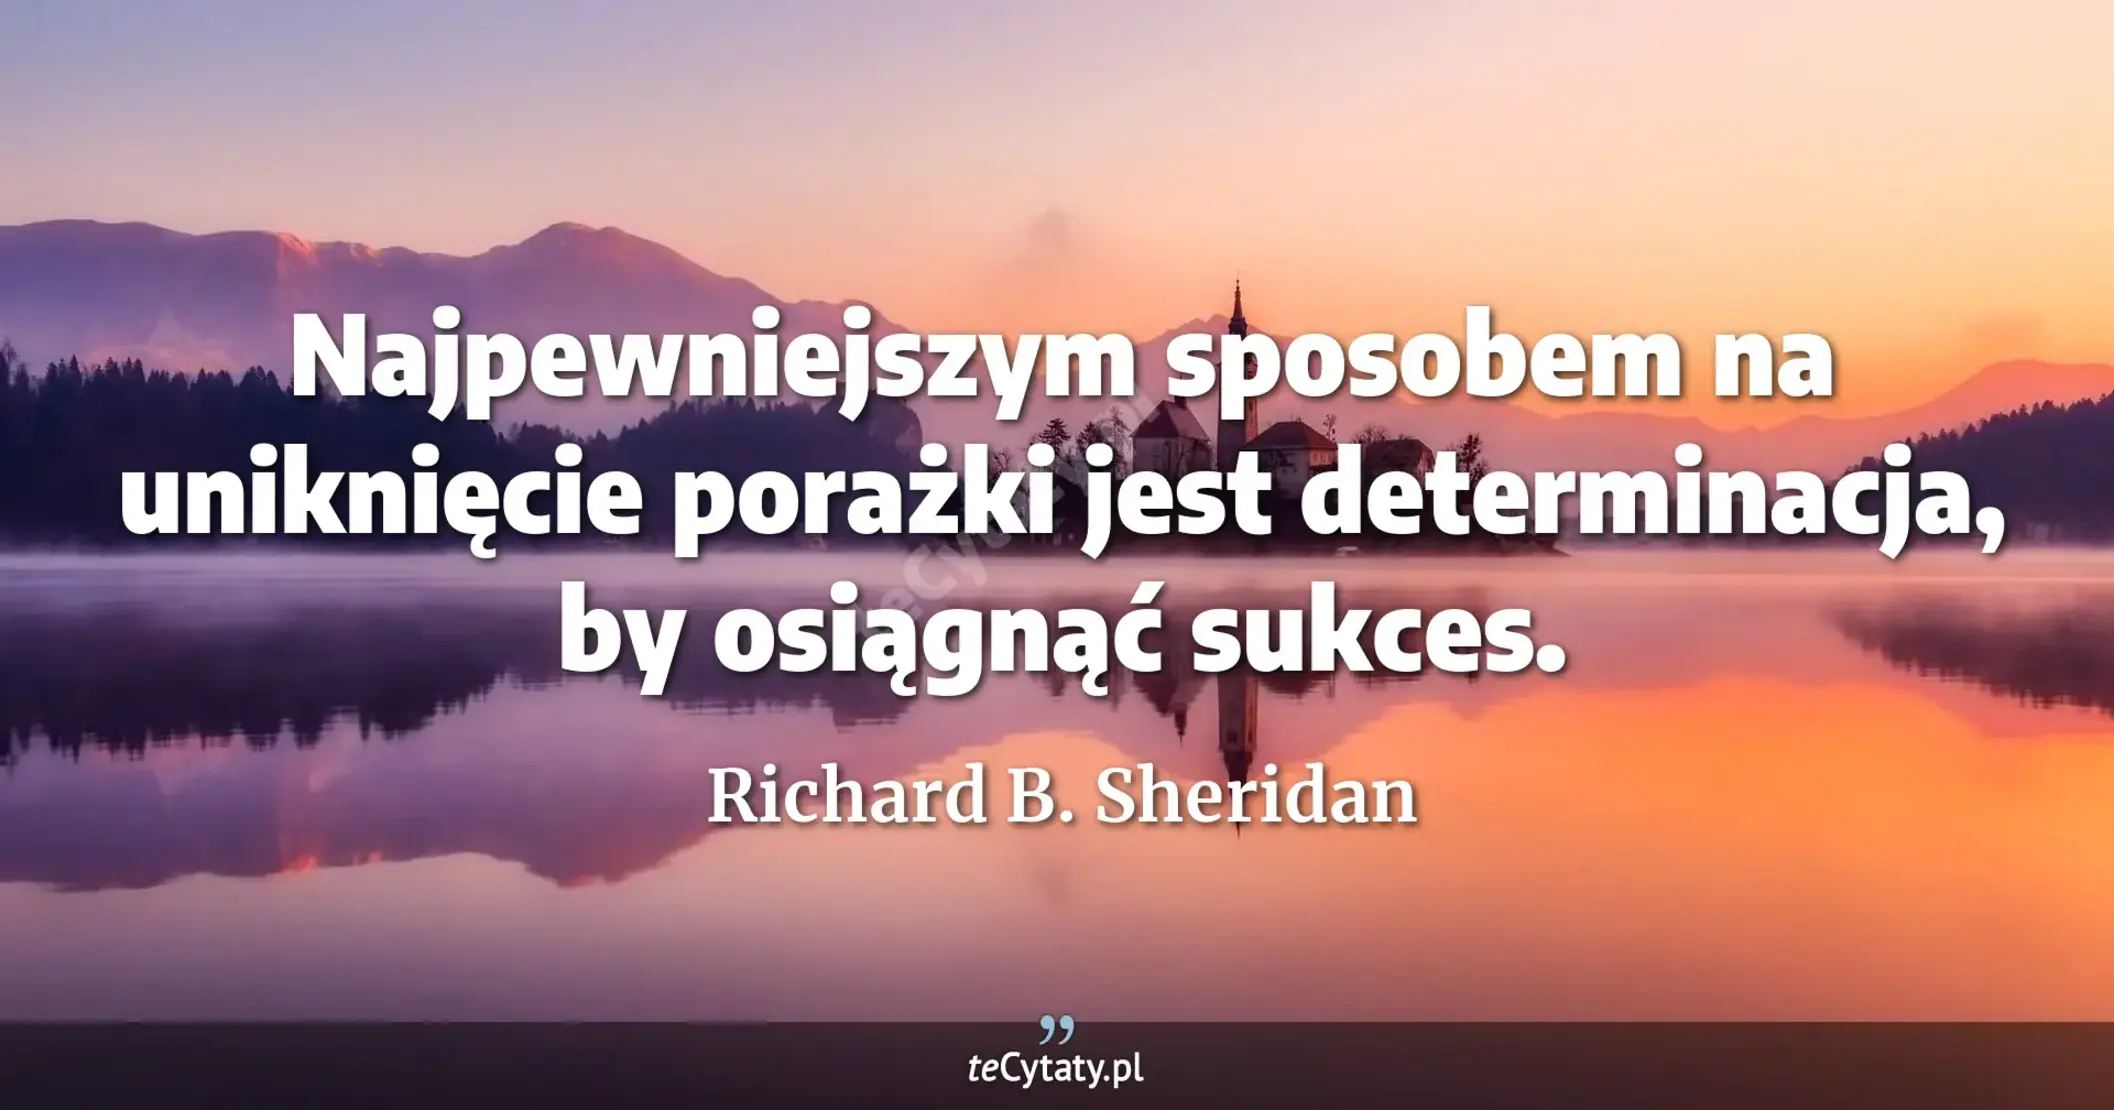 Najpewniejszym sposobem na uniknięcie porażki jest determinacja, by osiągnąć sukces. - Richard B. Sheridan